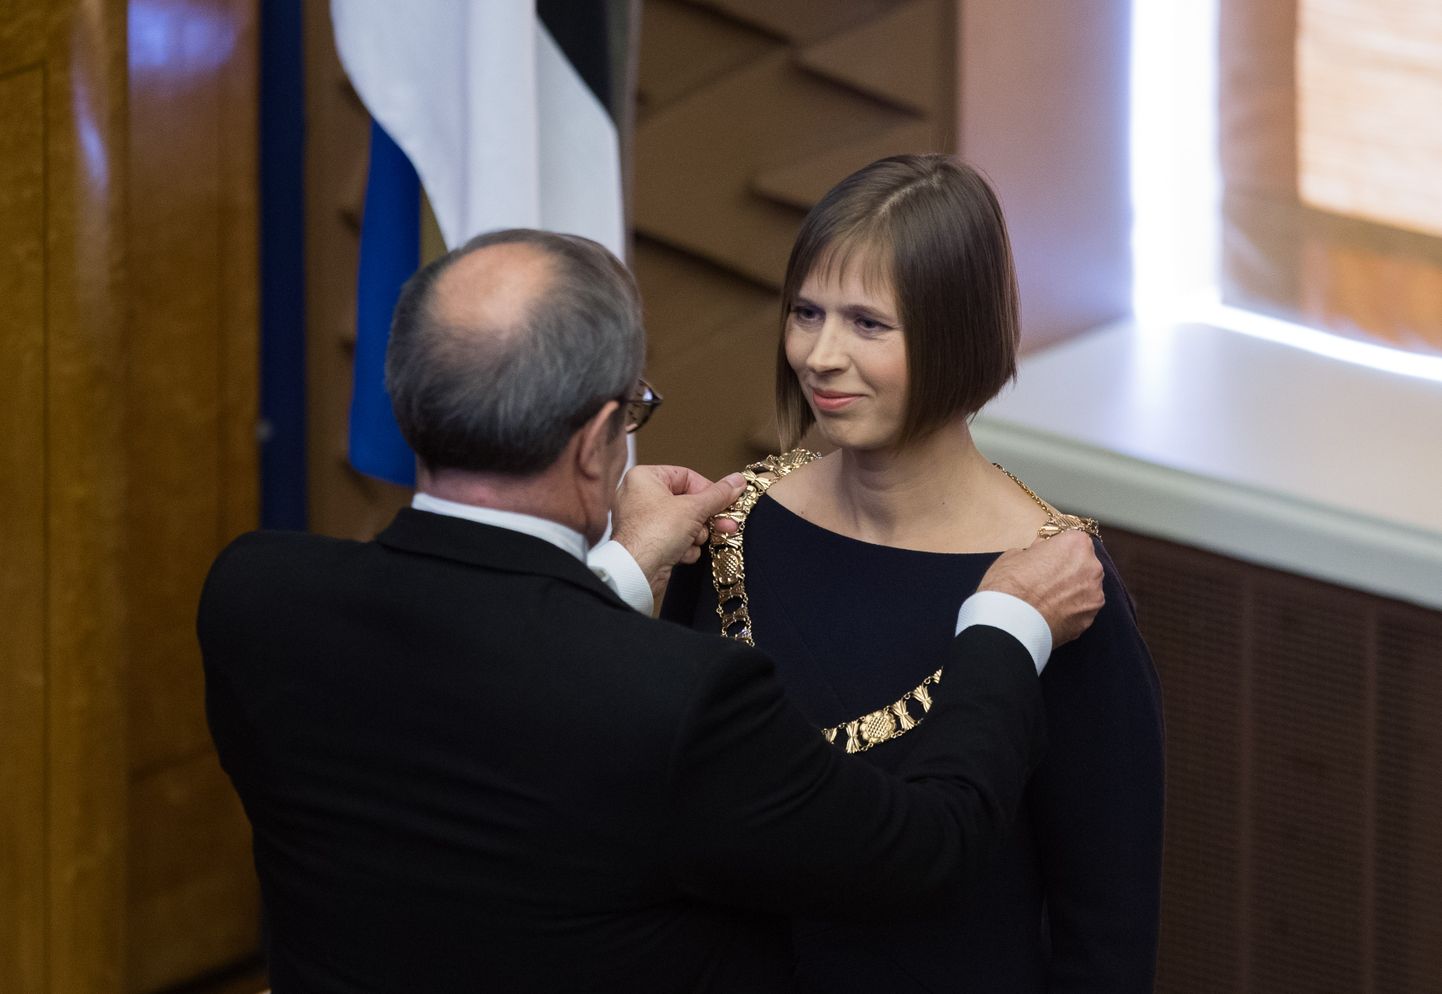 Kersti Kaljulaid sai presidendiks pärast seda, kui presidendi valimine riigikogus ja valimiskogus oli läbi kukkunud ning protsess jõudis tagasi riigikokku.
Foto Tairo Lutter/POSTIMEES